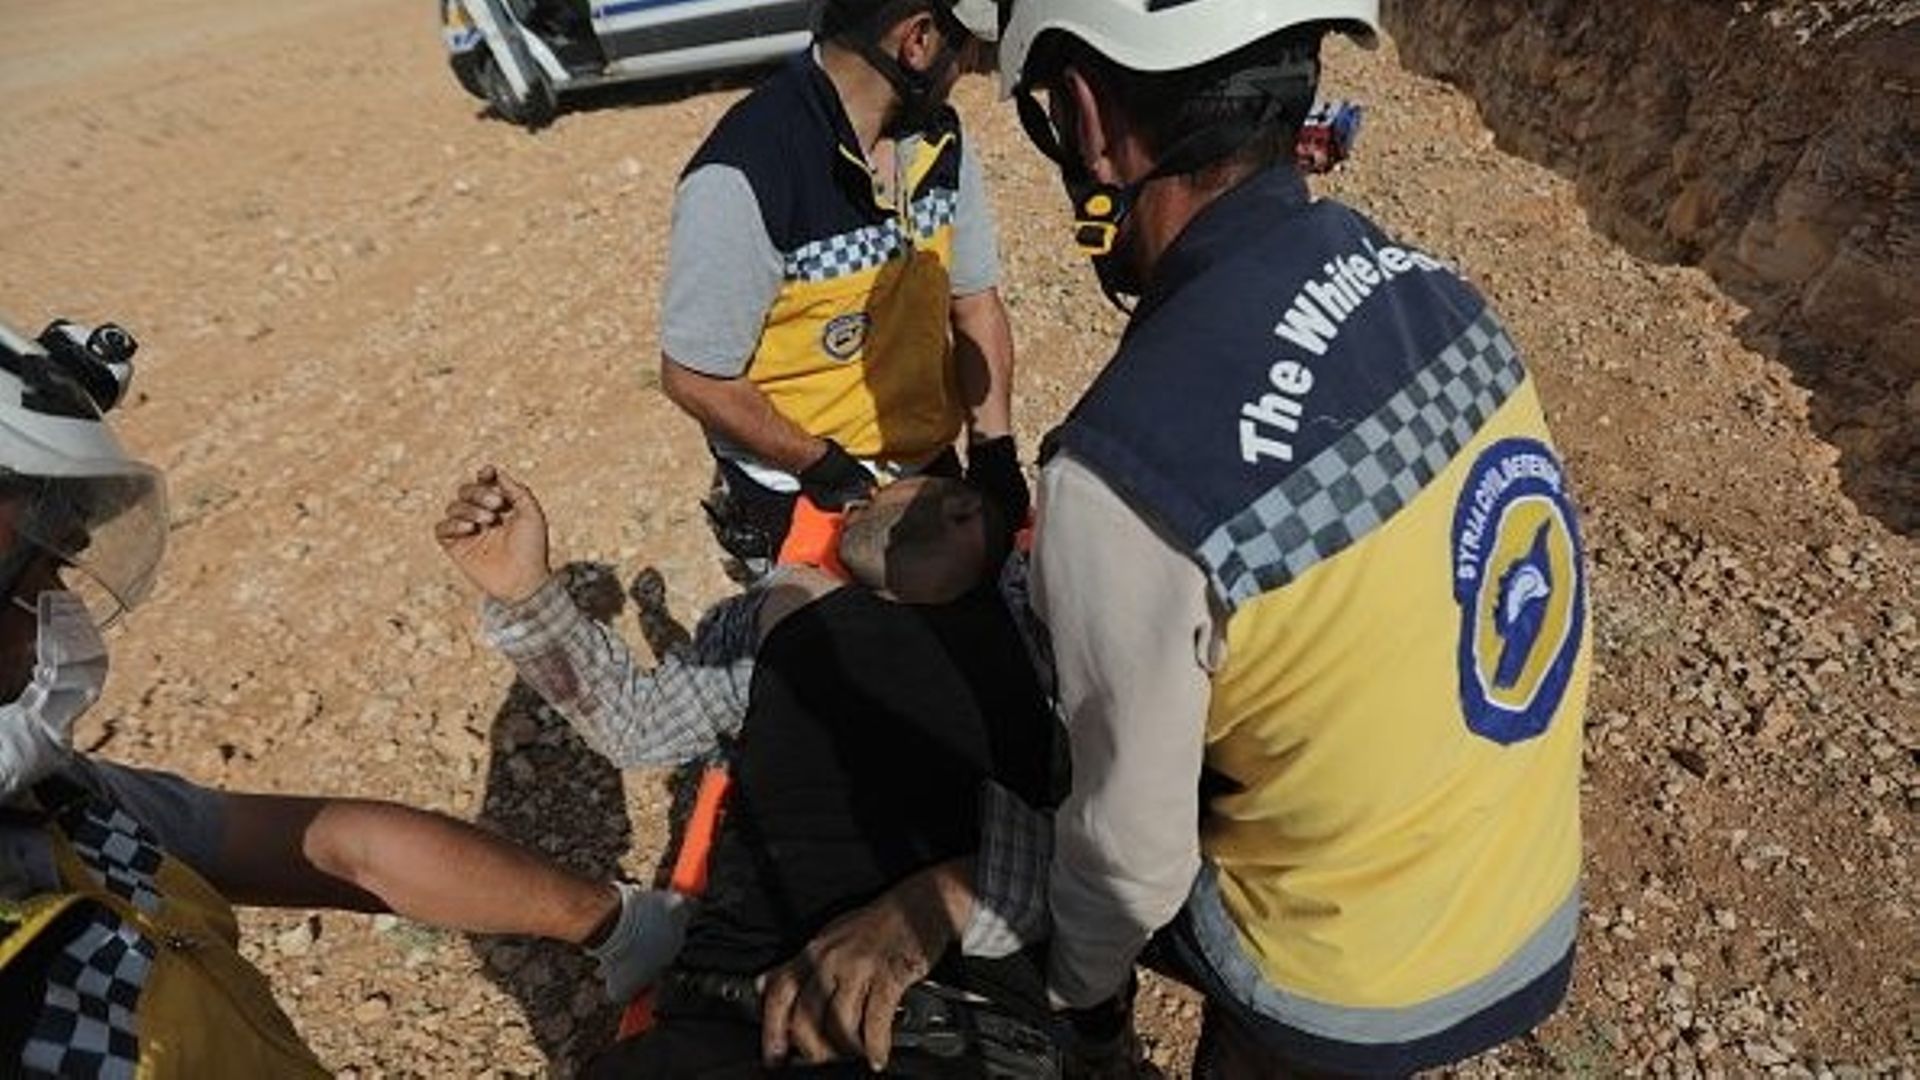 Des équipes de la défense civile et des citoyens transportent des blessés vers des ambulances après que des civils ont marché sur une mine, qui a fait 1 mort et 7 blessés, alors qu’ils tentaient de s’échapper du district de Bab à Alep, en Syrie, le 23 sep